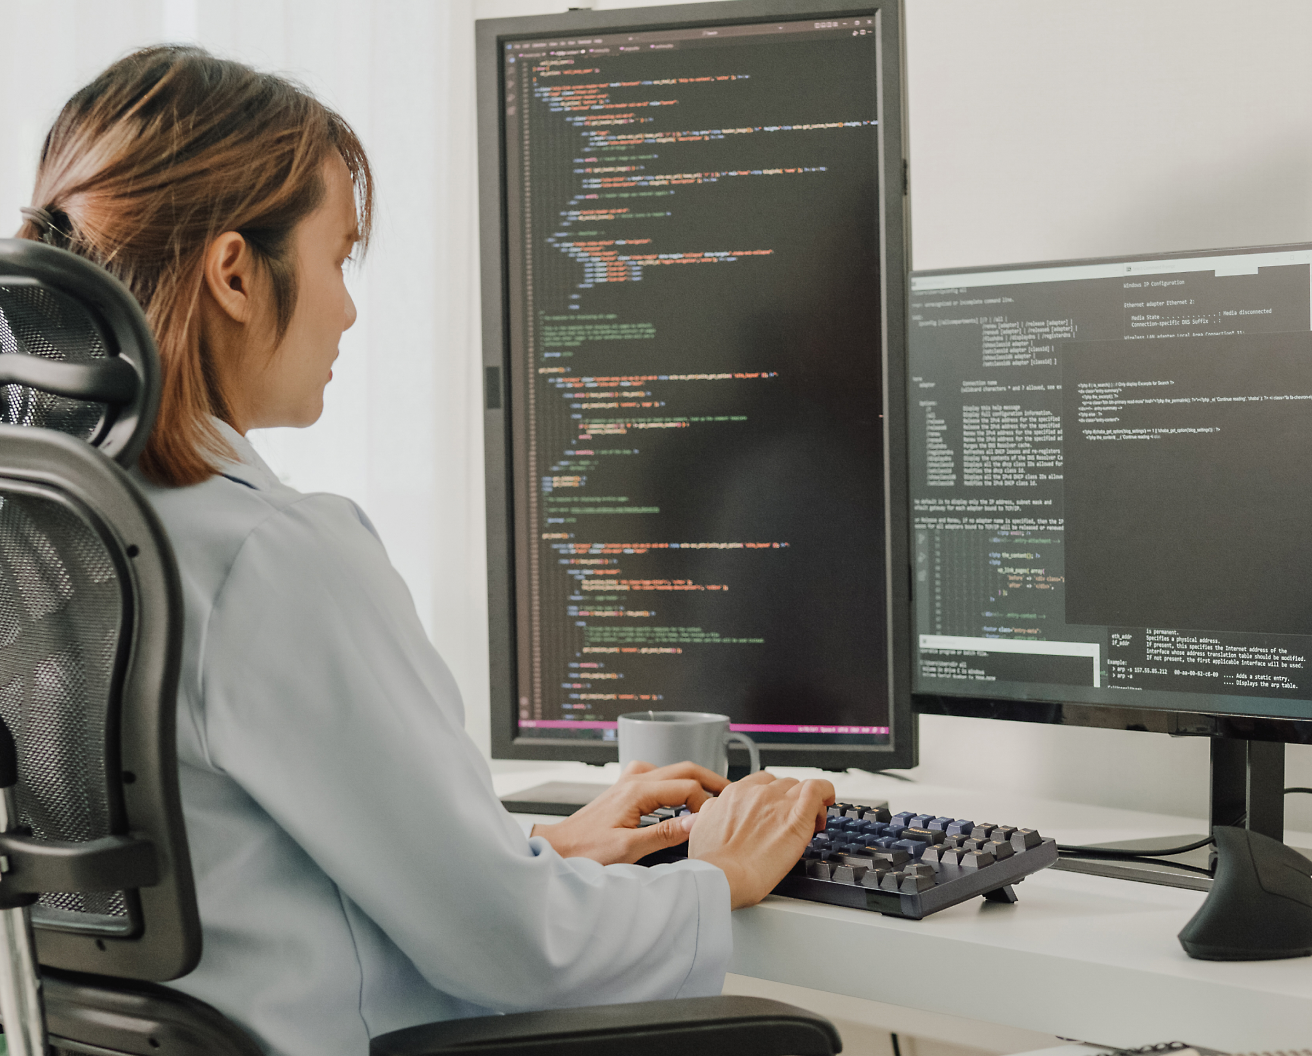 Uma mulher sentada em uma cadeira de escritório, programando em um computador com várias telas exibindo código de programação.